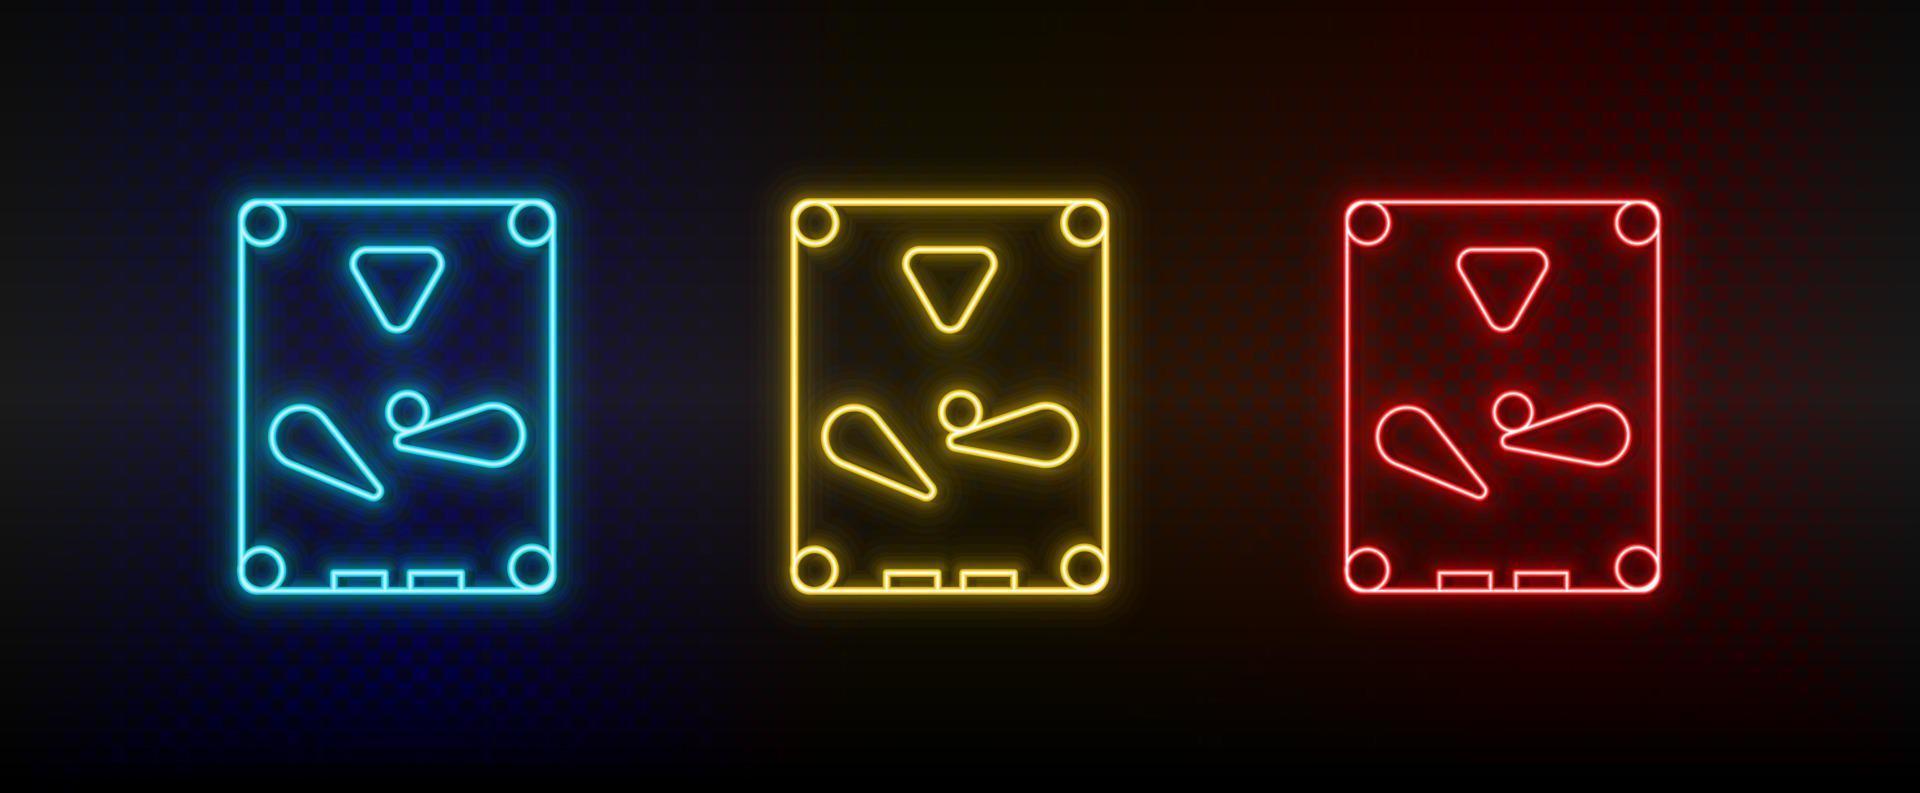 Neon-Symbole. Flipper-Arcade-Spiel. Satz von roten, blauen, gelben Neonvektorsymbolen auf dunklem Hintergrund vektor